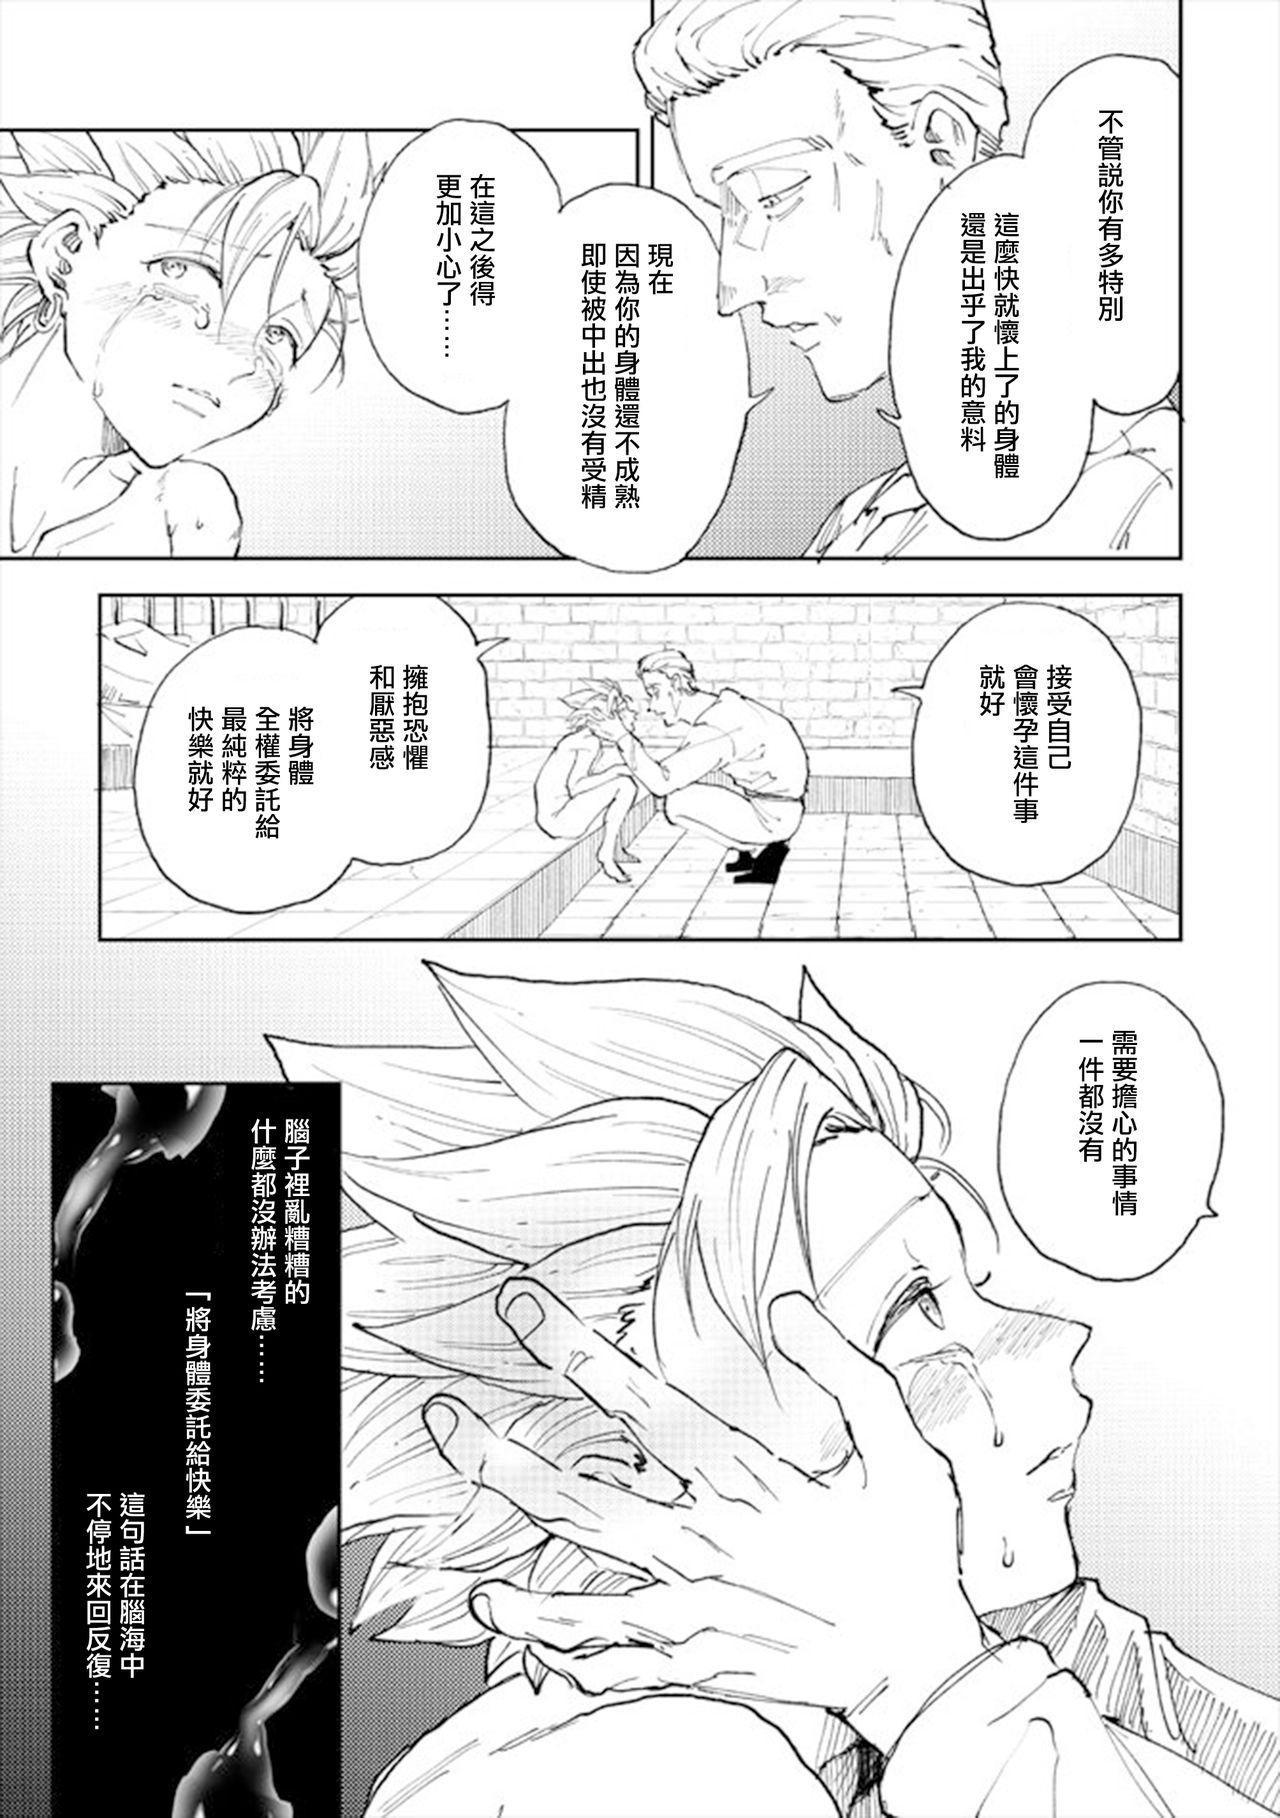 Lez Hardcore Rental Kamyu-kun 4 day - Dragon quest xi Gozo - Page 10